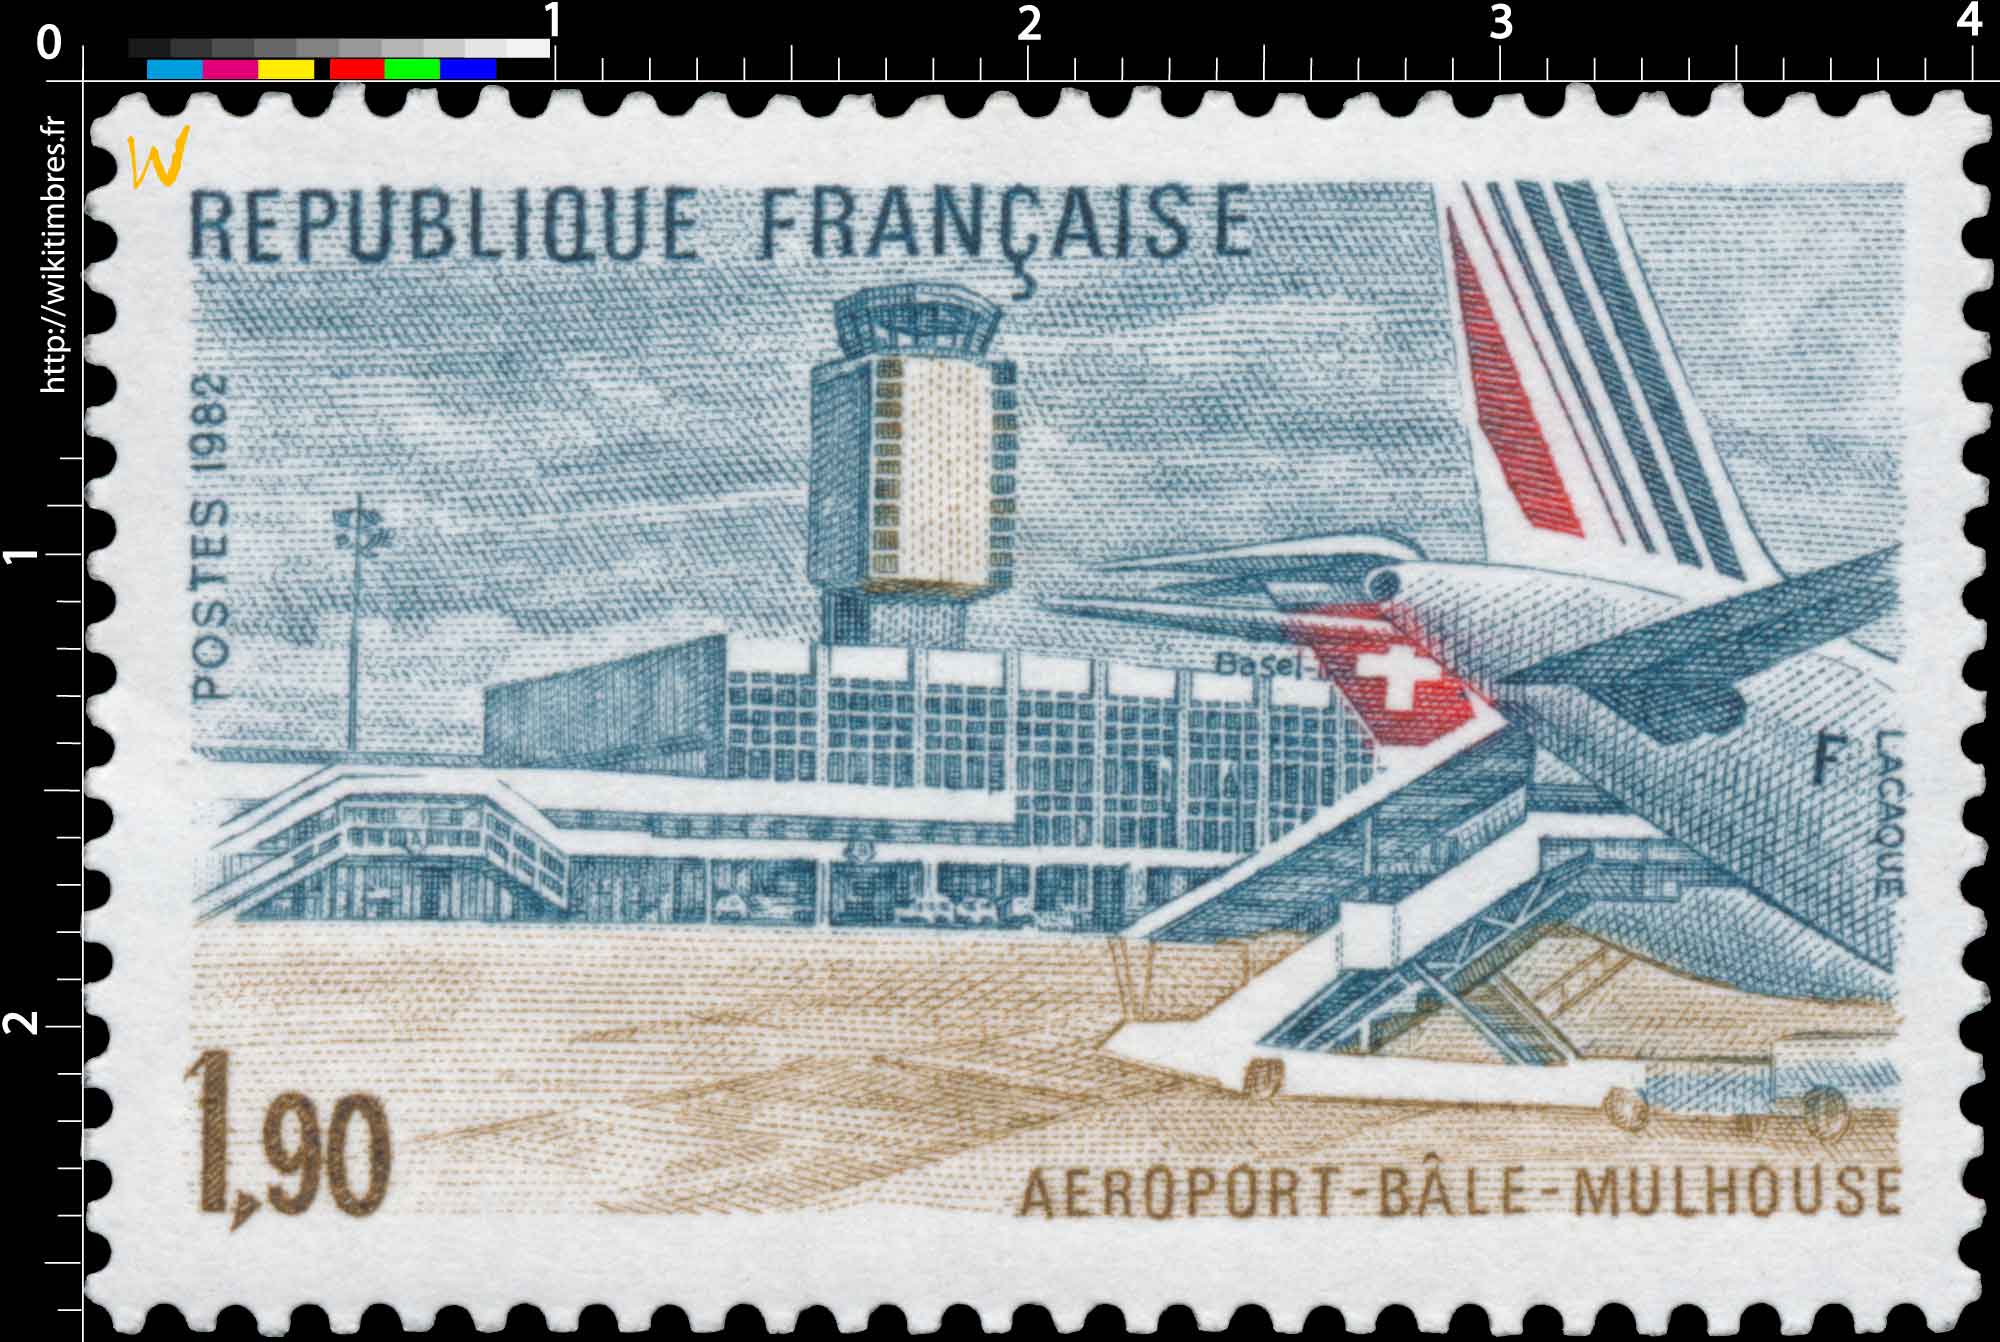 1982 AÉROPORT - BÂLE - MULHOUSE